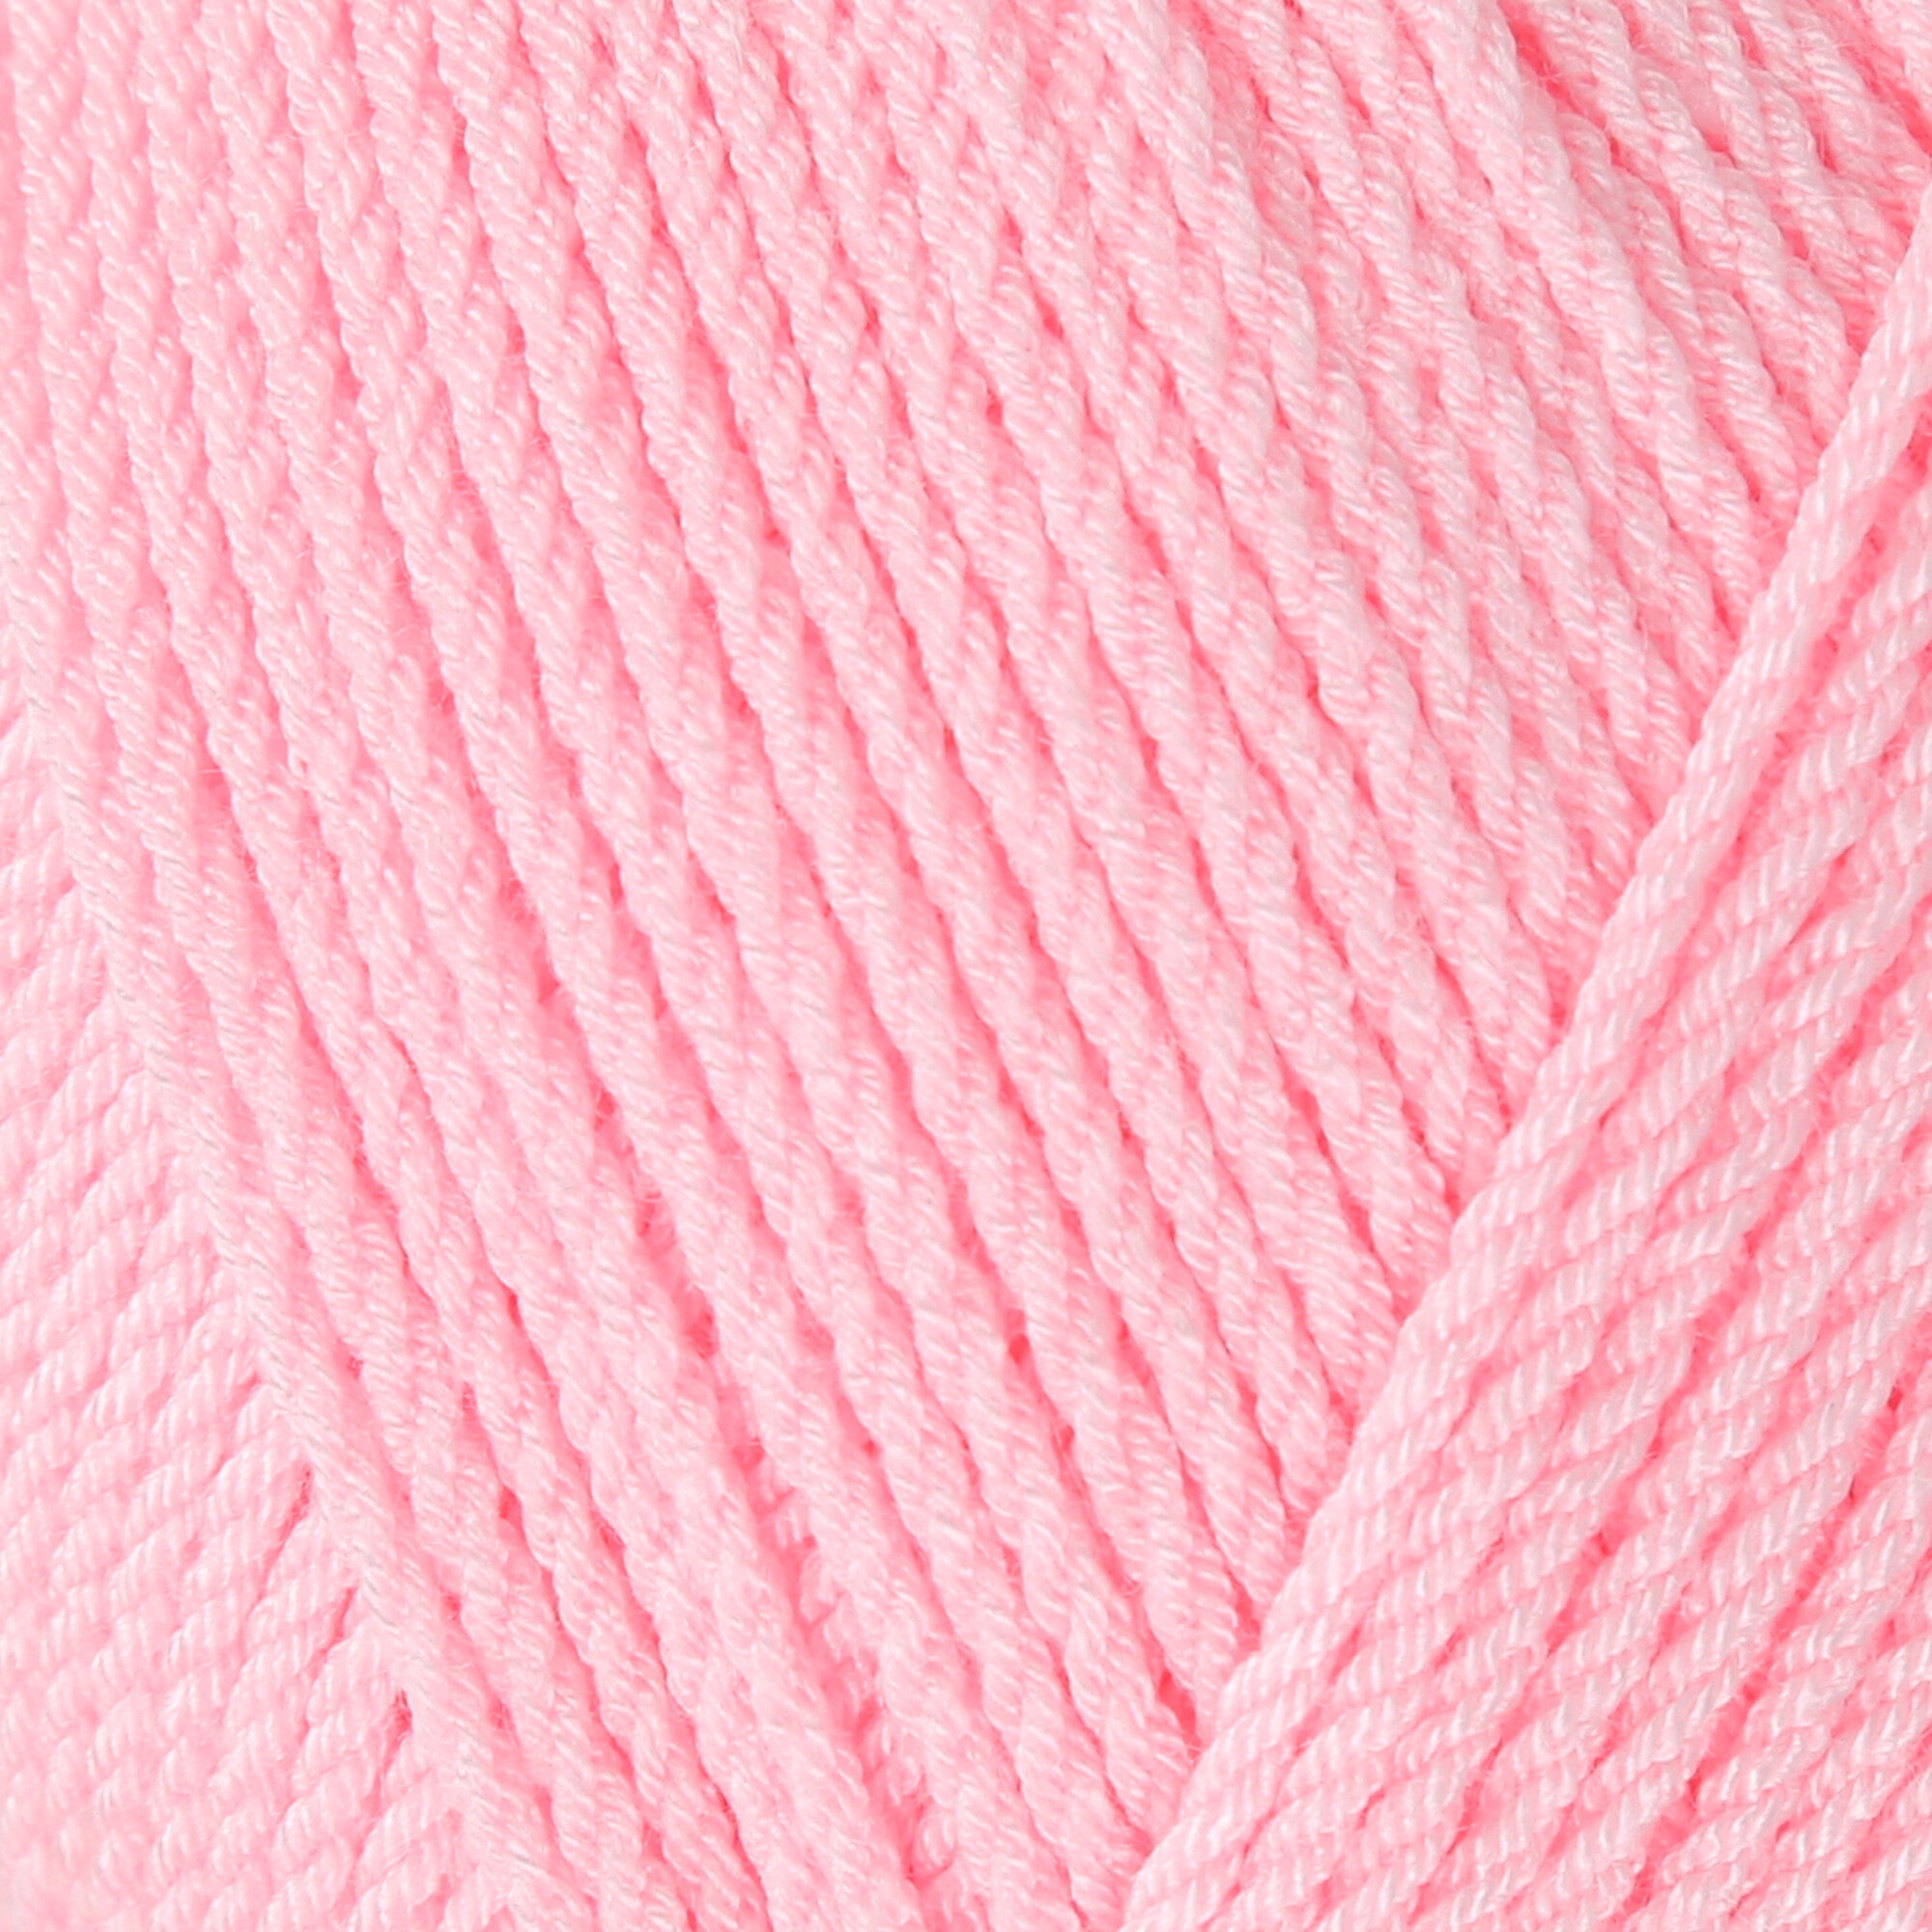 La Mia Diamond Knitting Yarn, Pink - L046